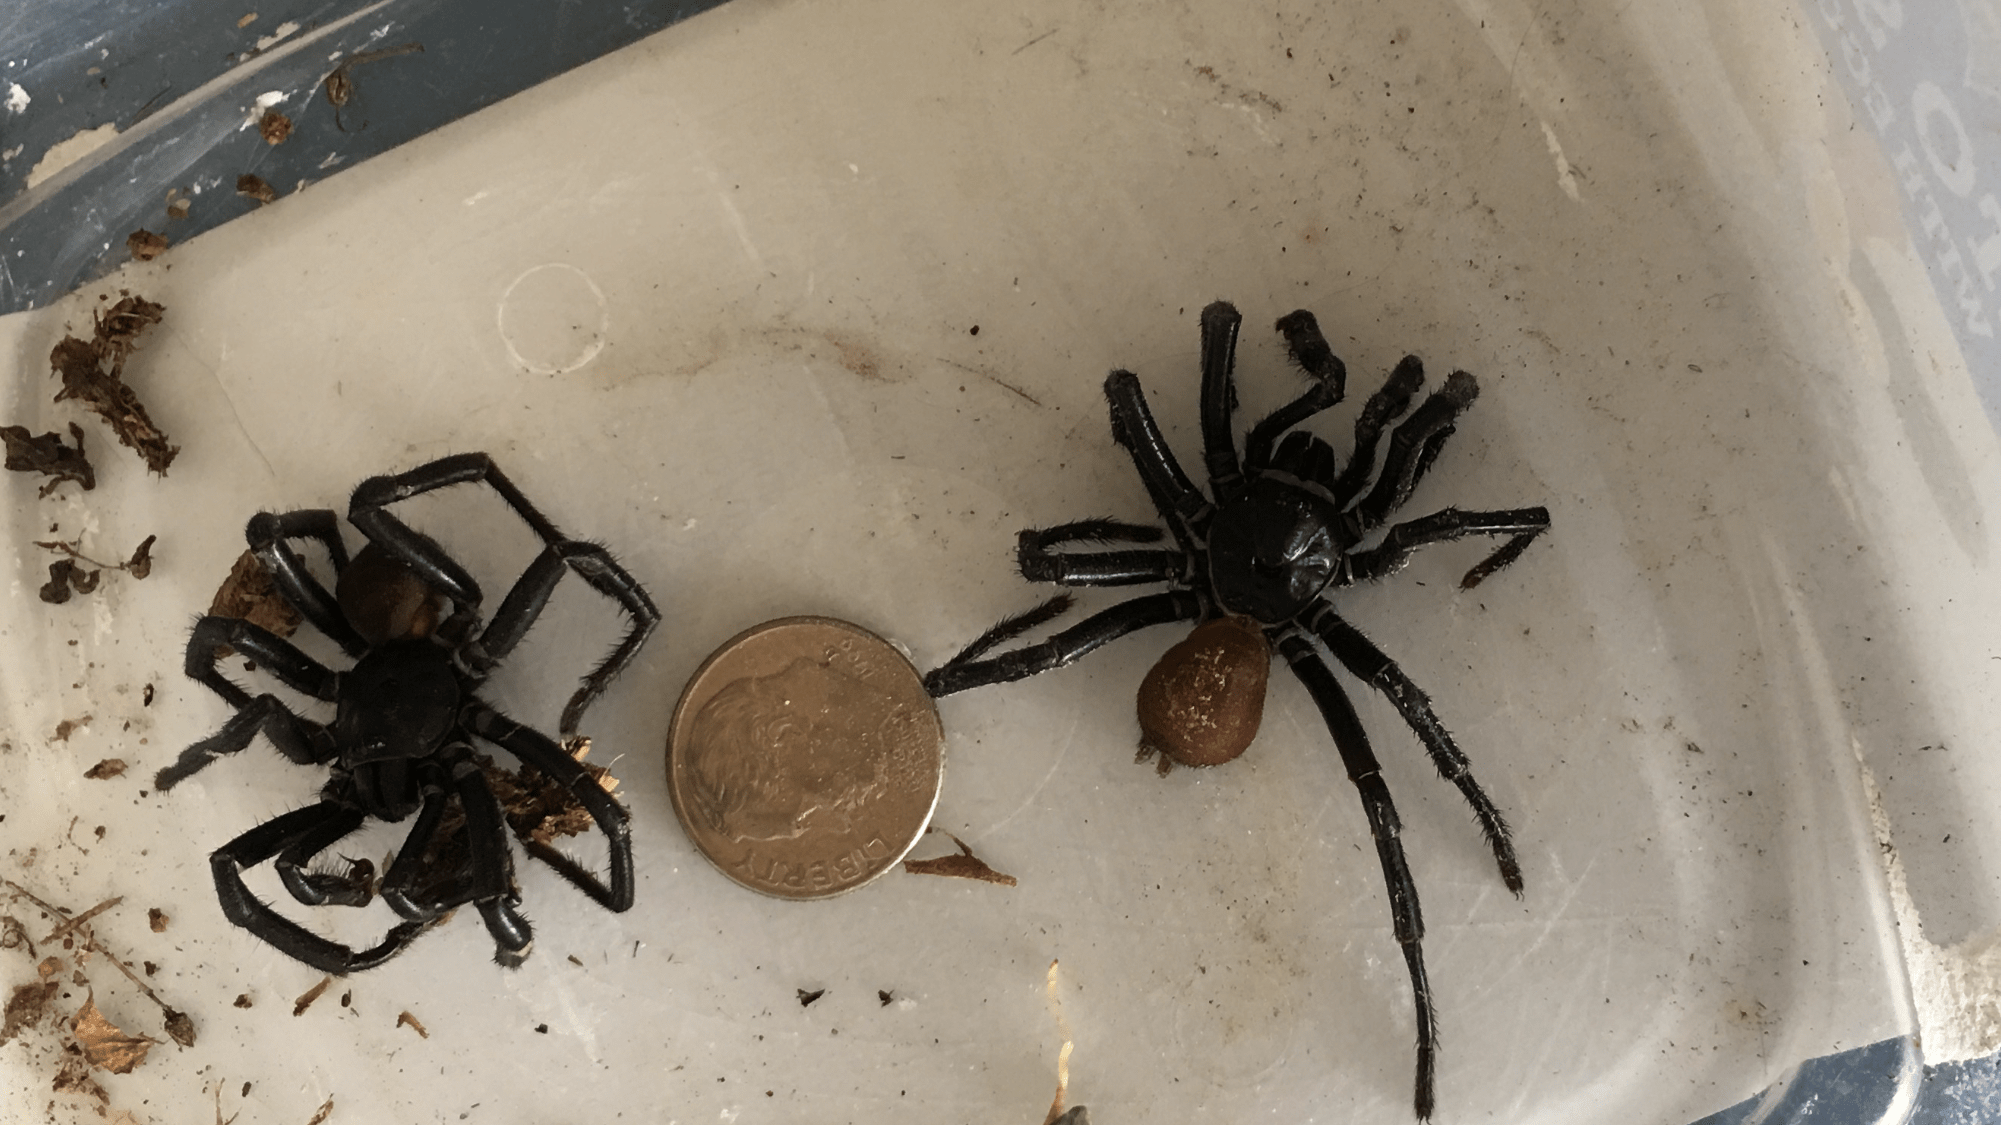 Picture of Bothriocyrtum californicum (California Trapdoor Spider) - Male - Dorsal